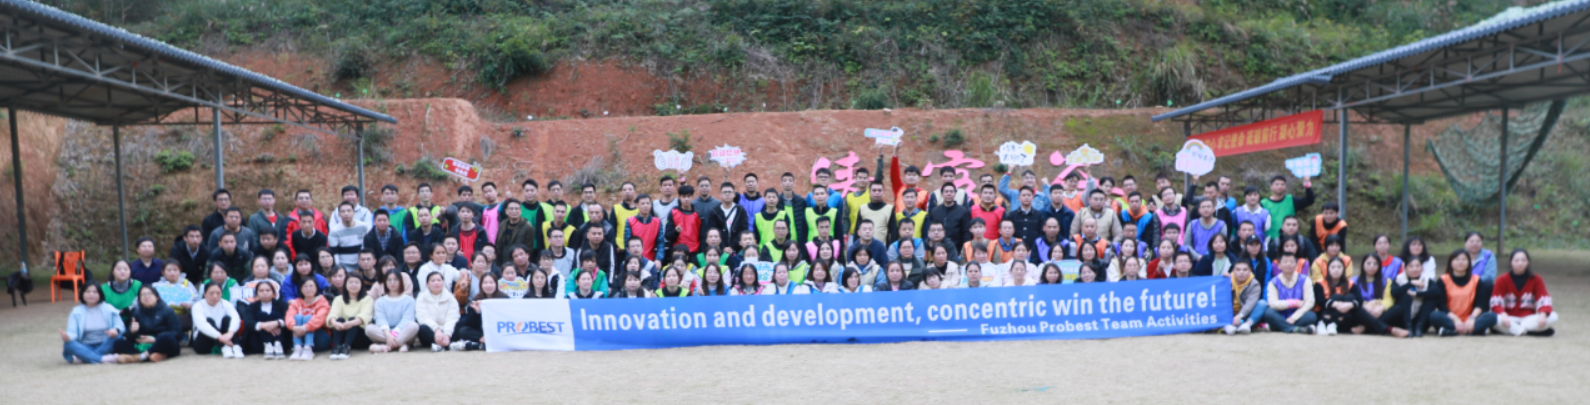 ¡Trabaja juntos, crea un futuro mejor! Fuzhou Probest Team Building Activity